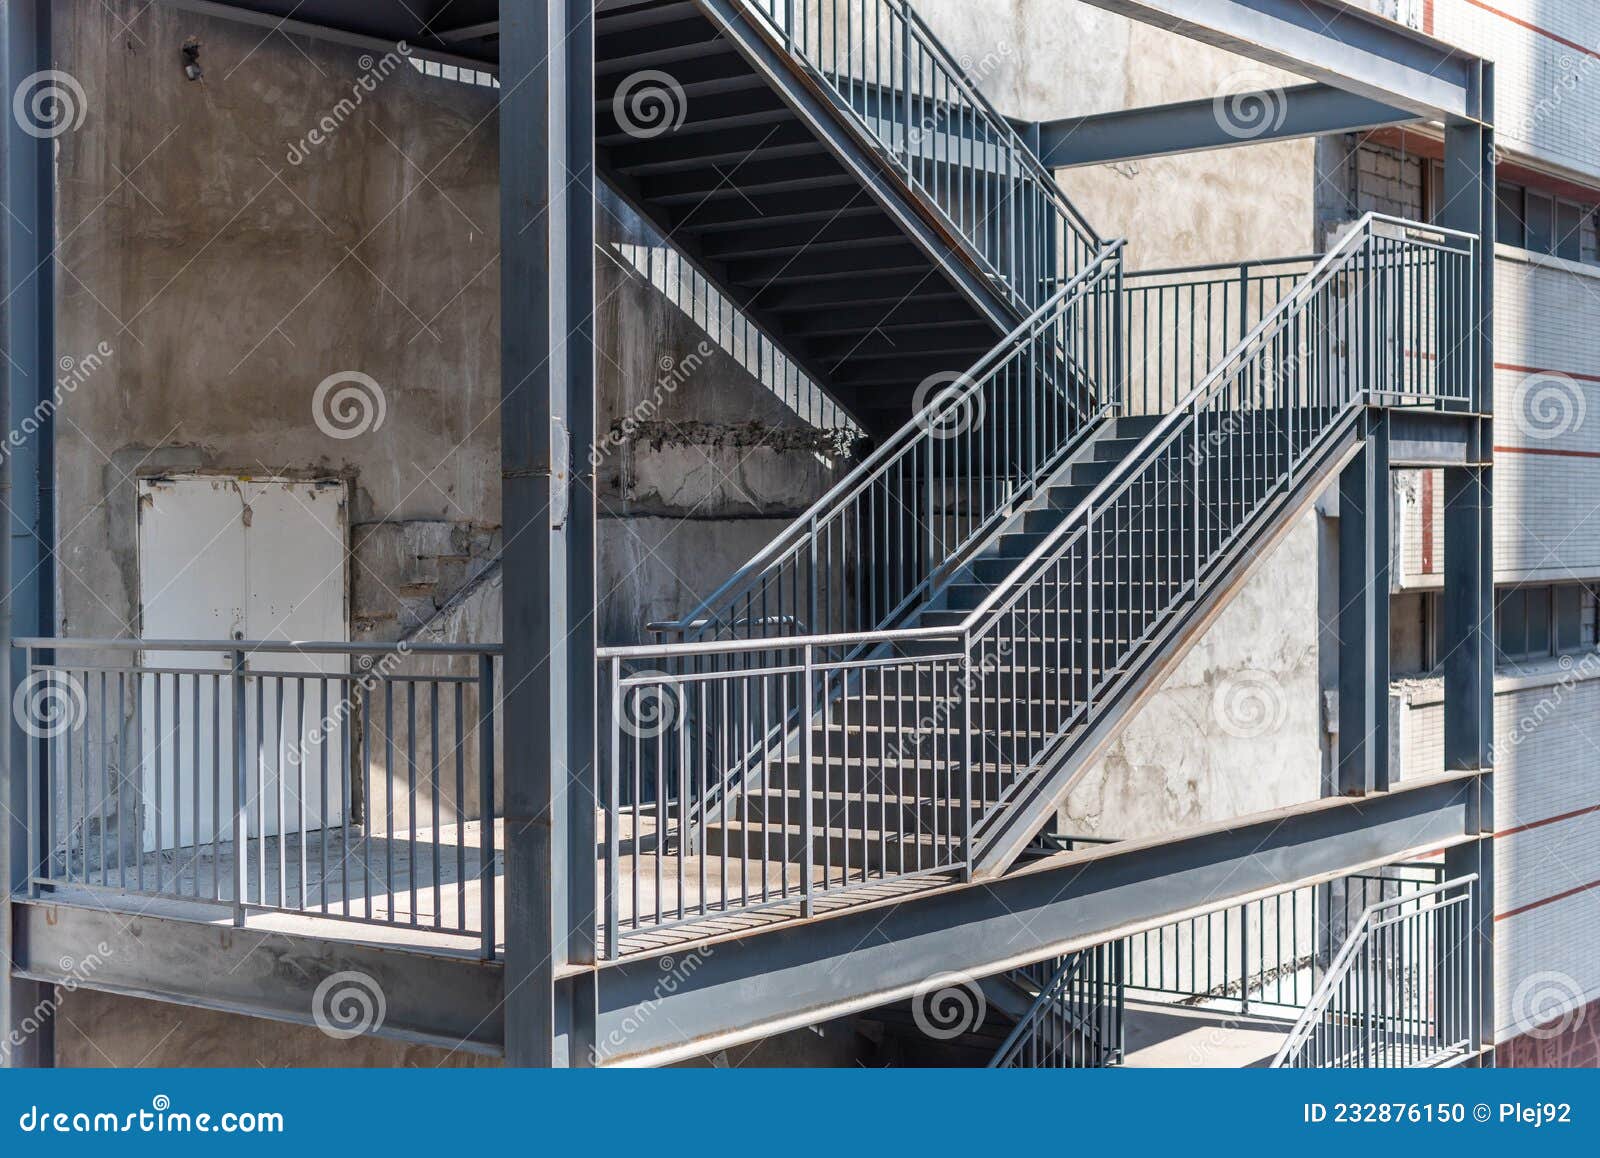 Изготовление металлических лестниц с площадкой